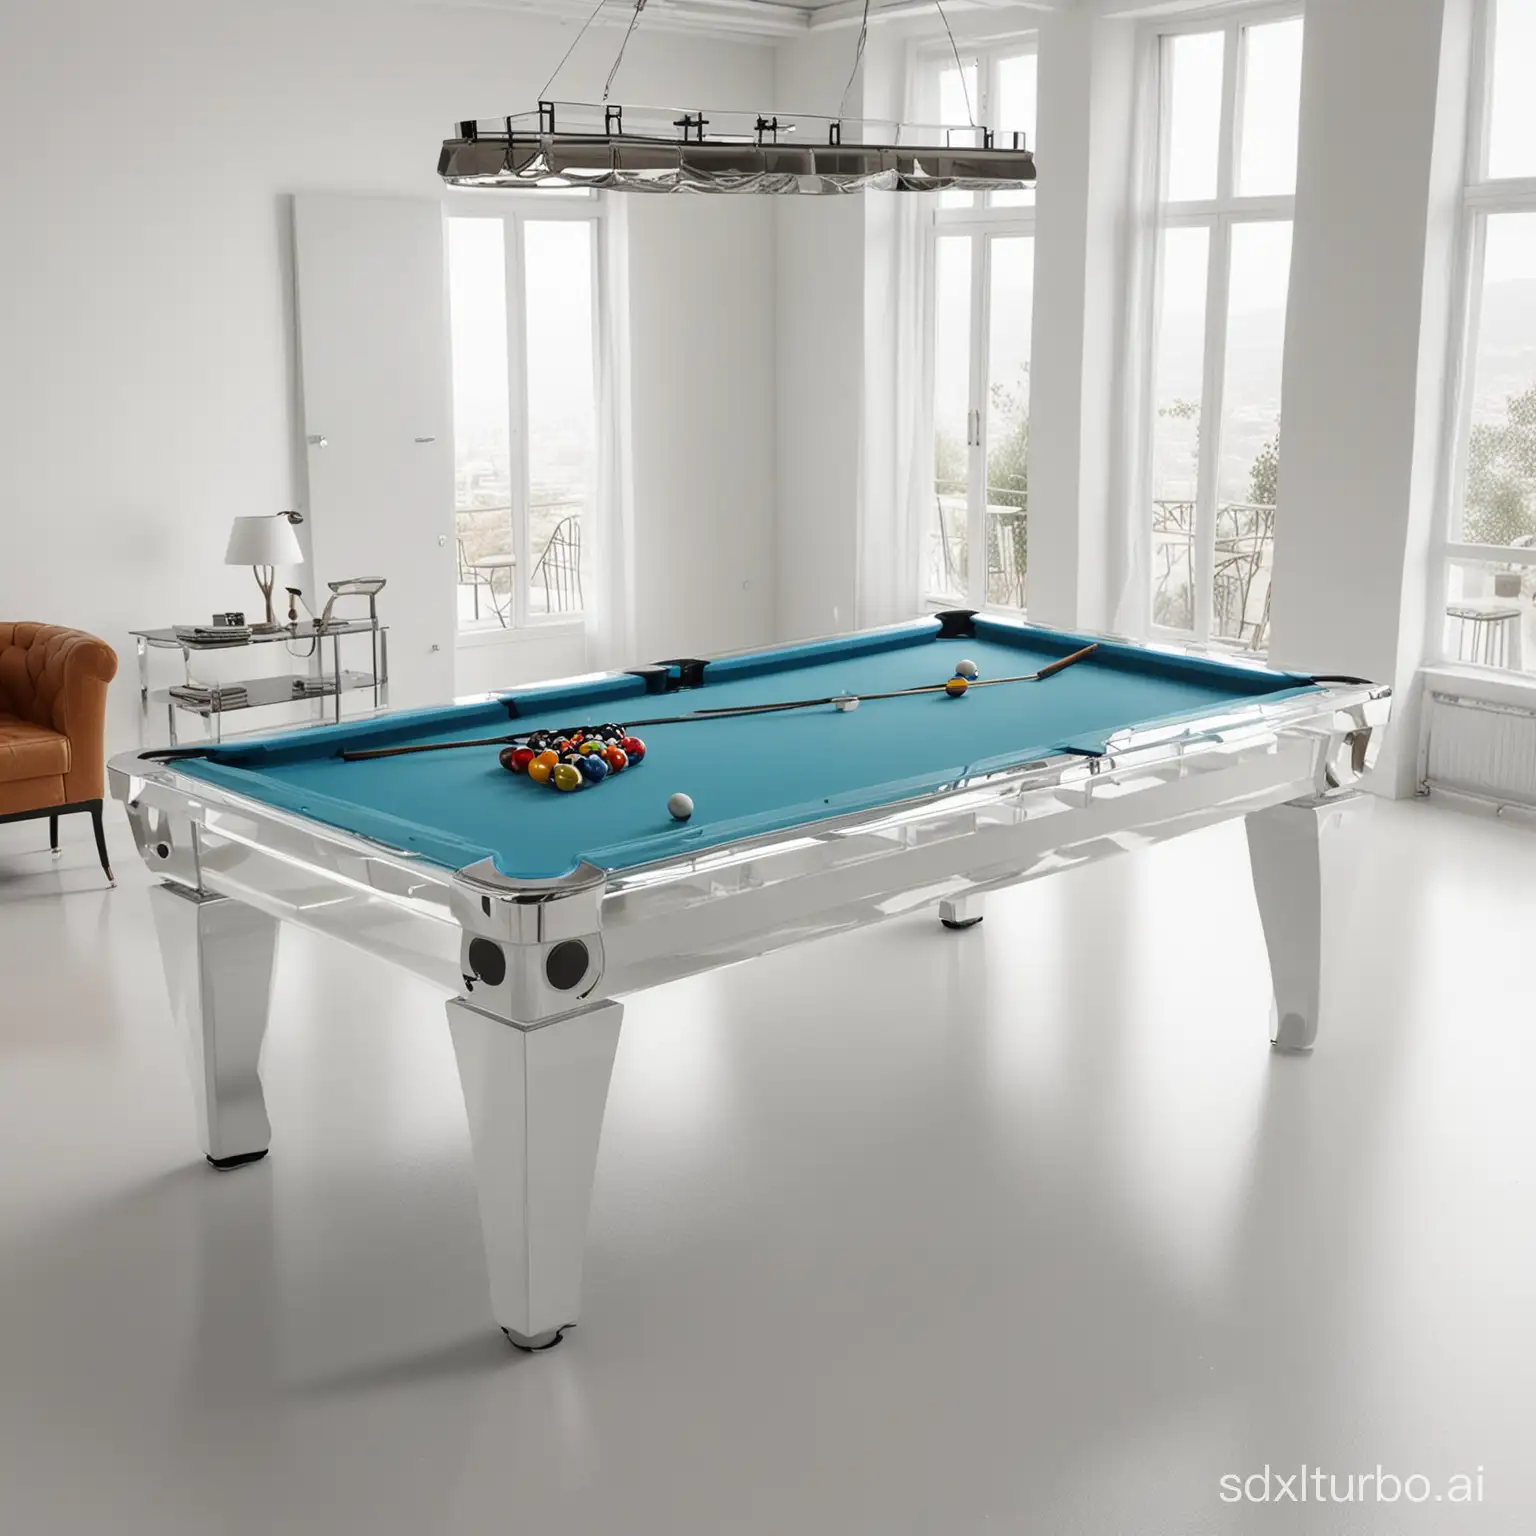 台球桌，玻璃台球桌，意大利大师风格，白色背景，全景图，高清8K